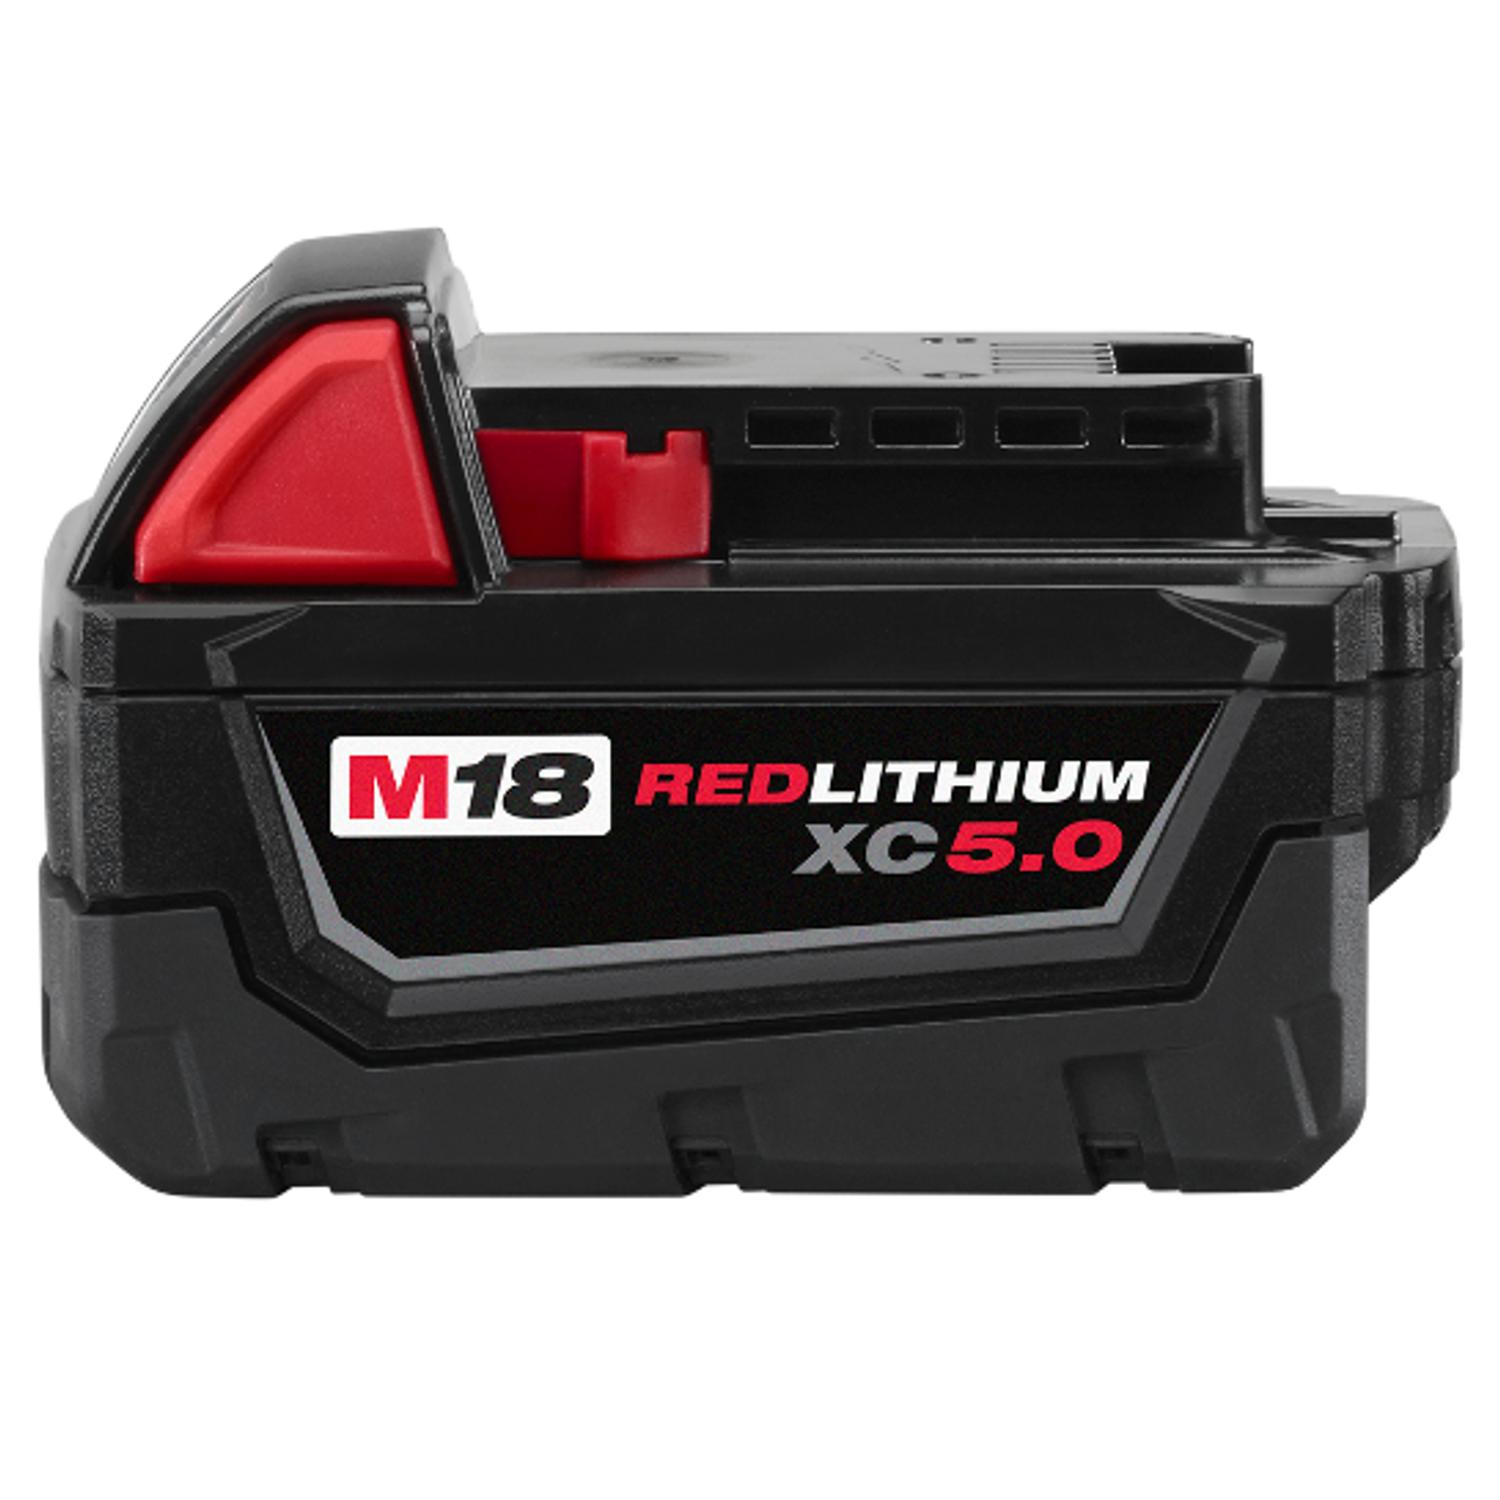 Kit Cargador Batería Redlithium Xc 5.0 M18 Milwaukee en Pachuca